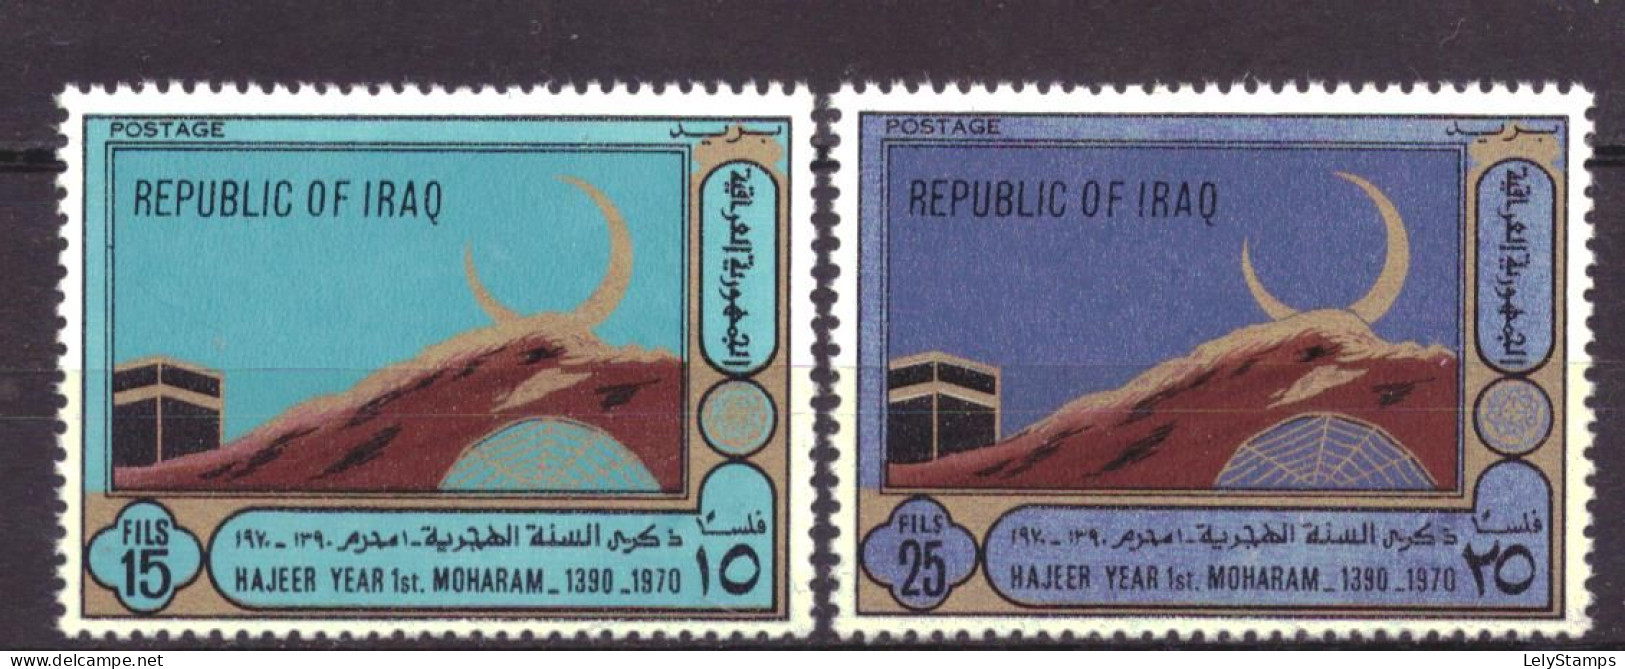 Irak / Iraq 628 & 629 MNH ** Islamic Year 1390 (1970) - Iraq